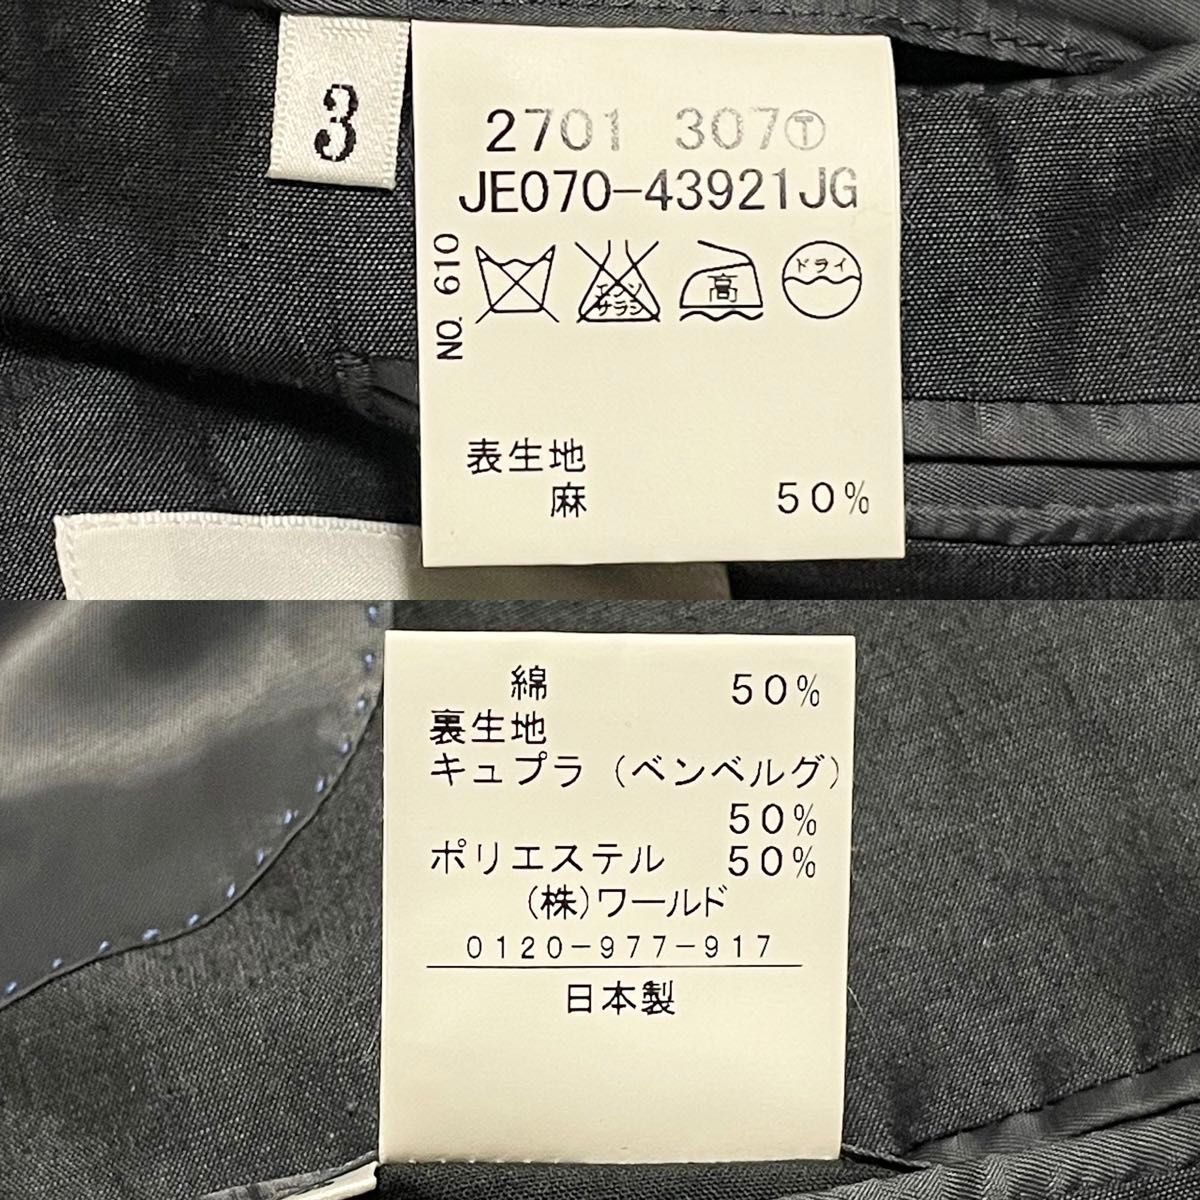 【美品】タケオキクチ　TAKEO KIKUCHI セットアップ　スーツ　ジャケット　光沢感　高級感◎ グレー　リネン　L 3